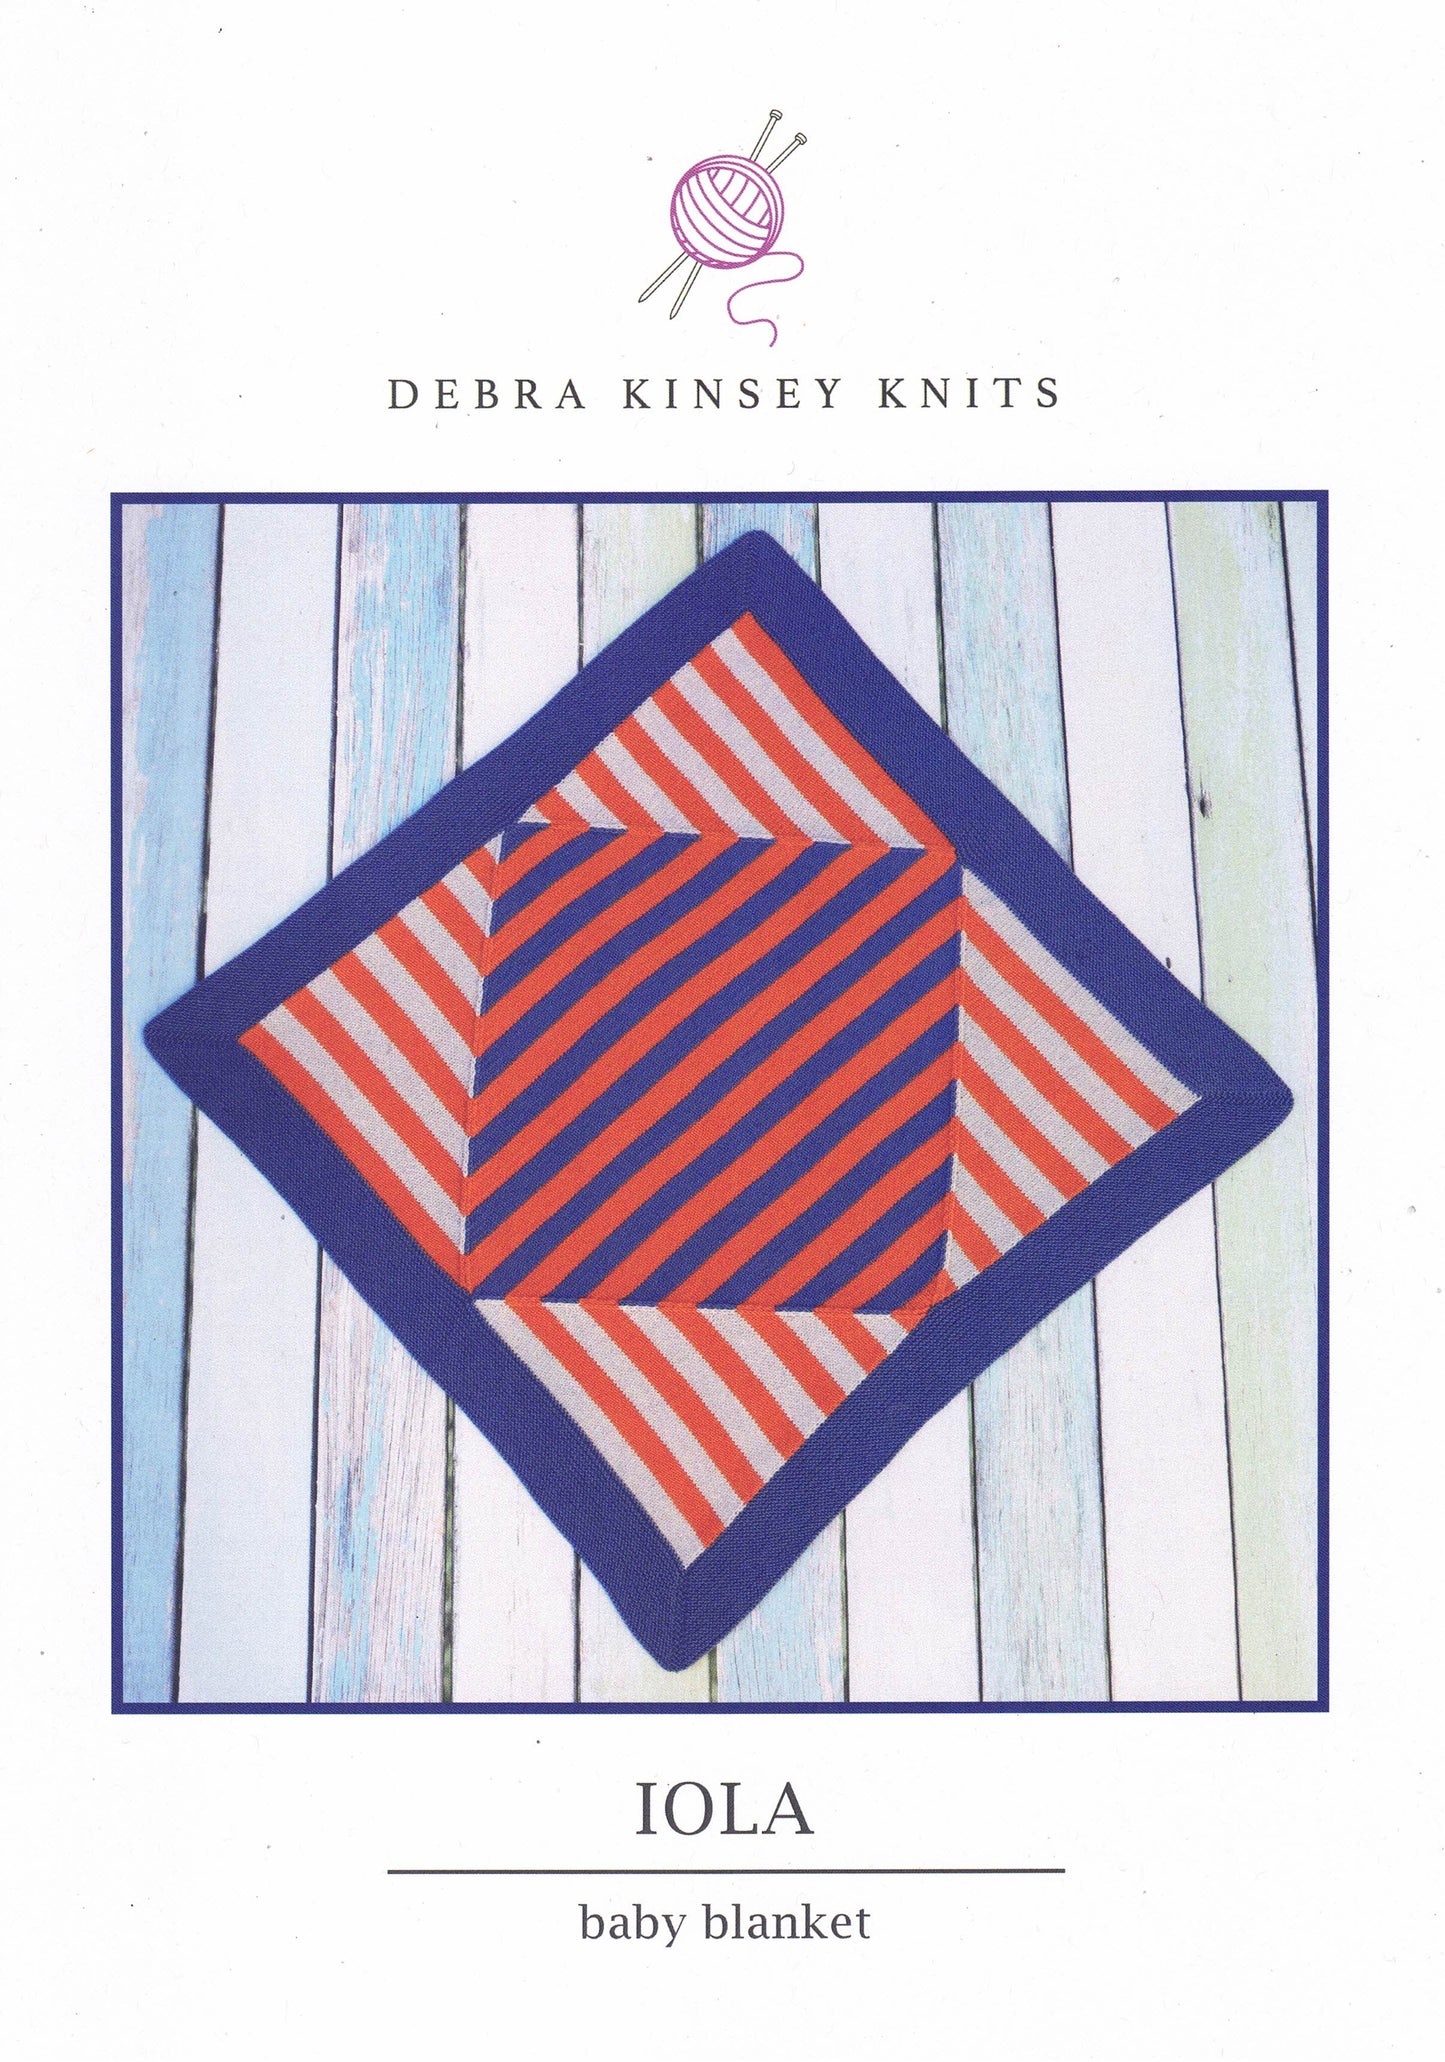 Accessories - Debra Kinsey Leaflet Iola Baby Blanket